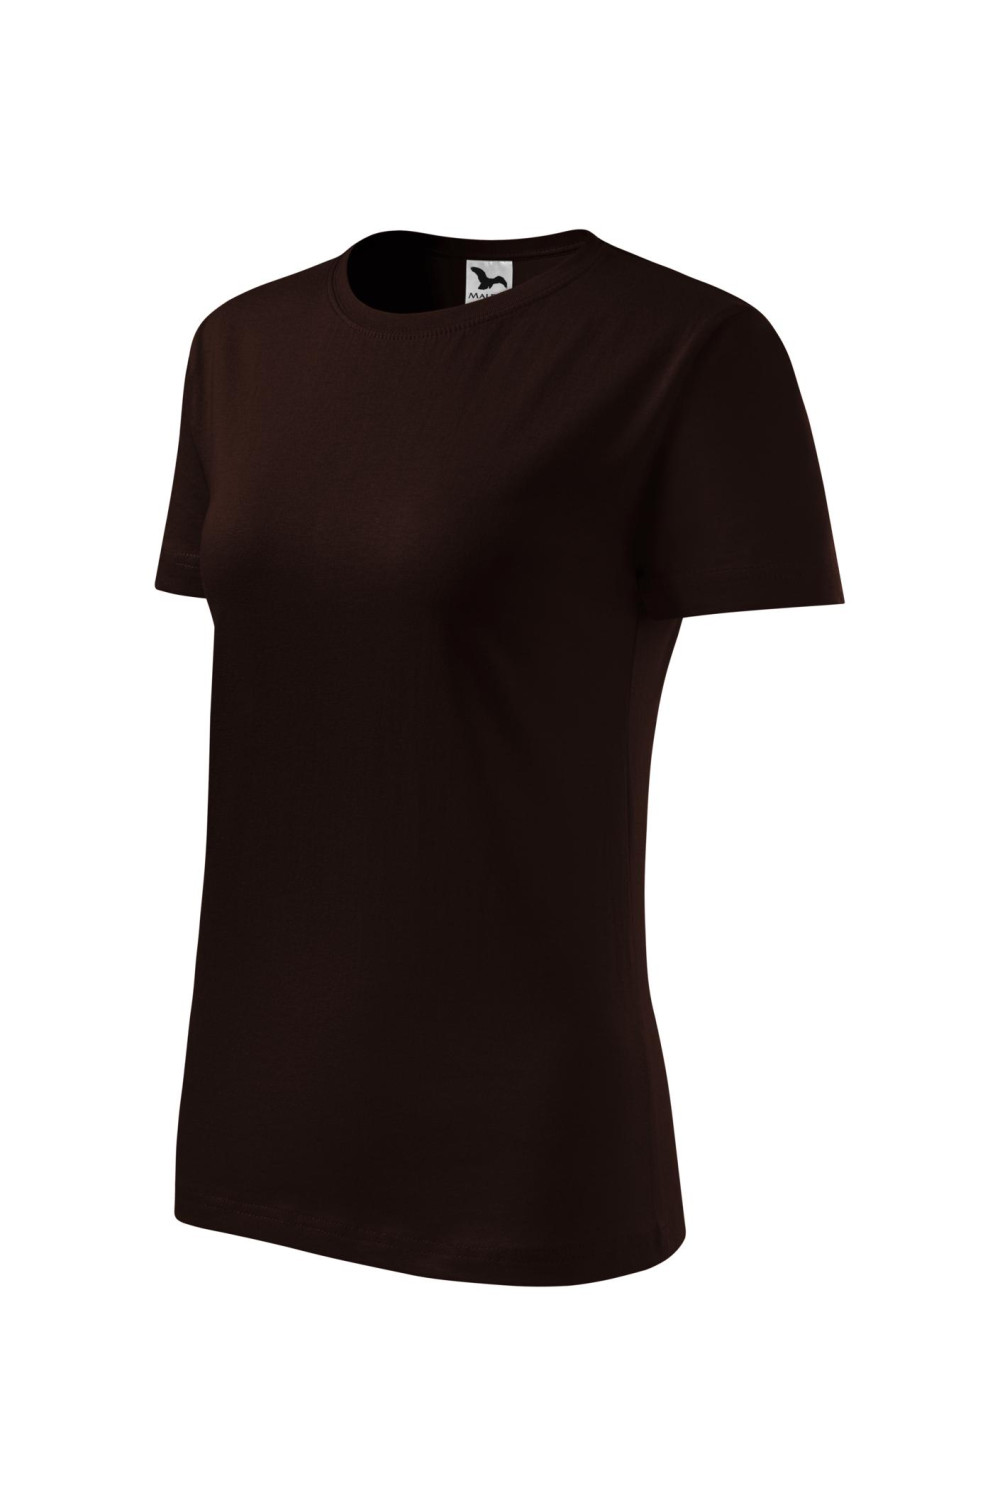 BASIC 134 MALFINI Koszulka damska 100% bawełna t-shirt kawowy